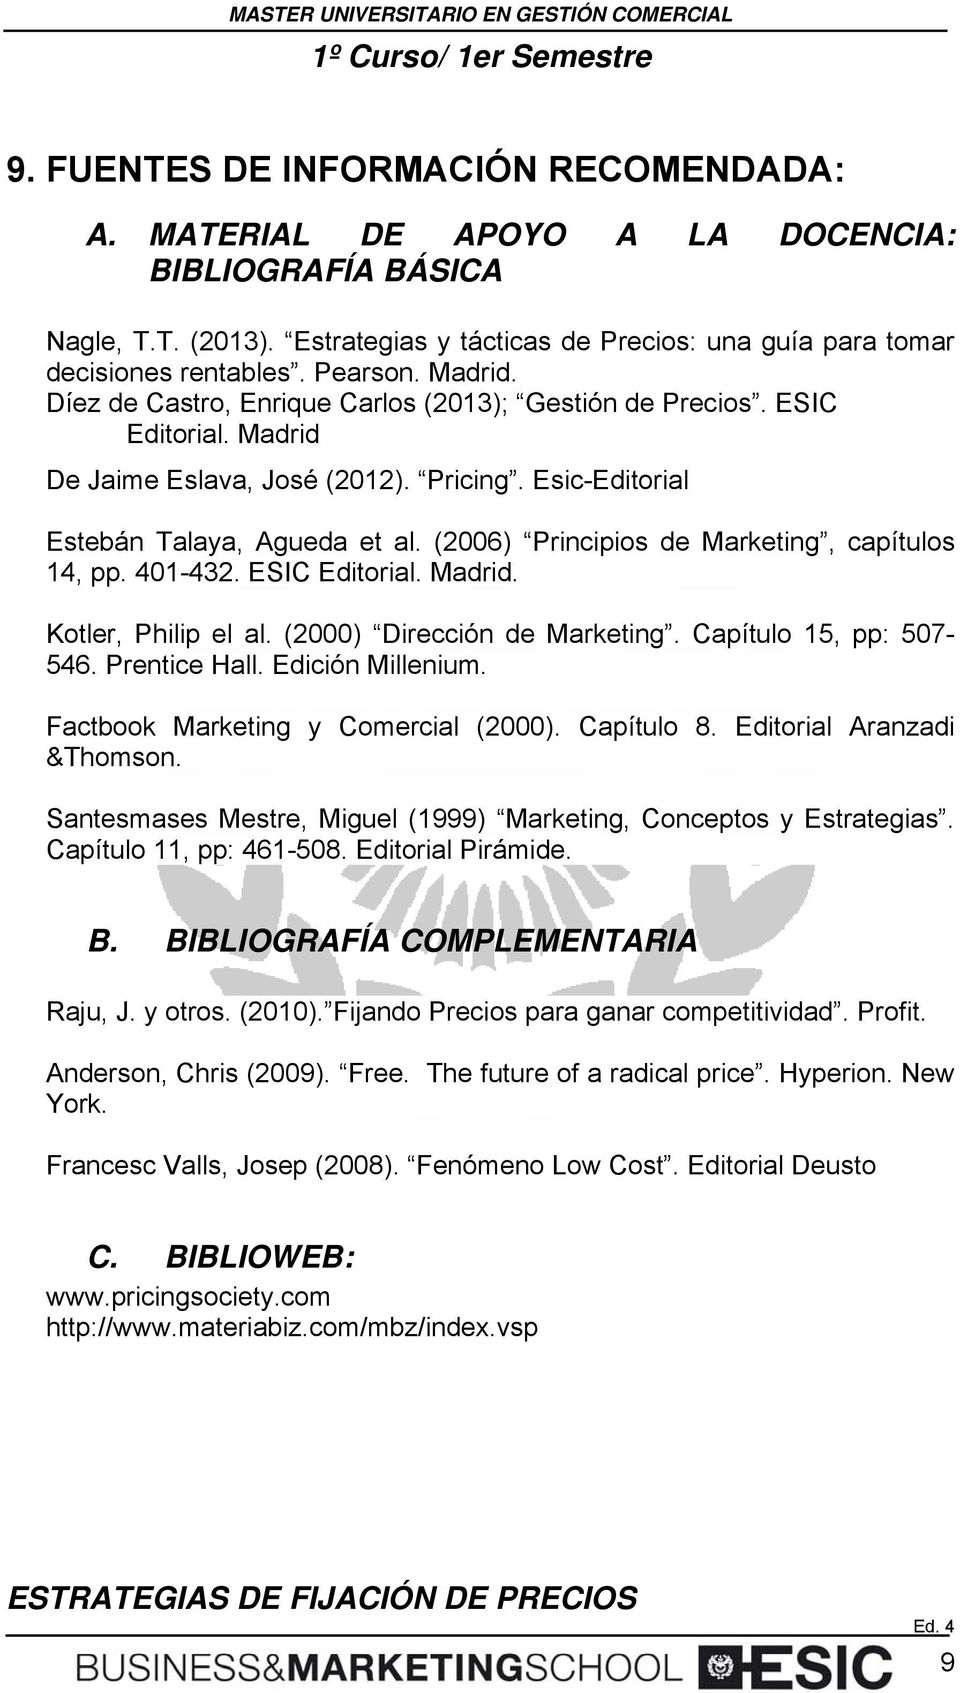 (2006) Principis de Marketing, capítuls 14, pp. 401-432. ESIC Editrial. Madrid. Ktler, Philip el al. (2000) Dirección de Marketing. Capítul 15, pp: 507-546. Prentice Hall. Edición Millenium.